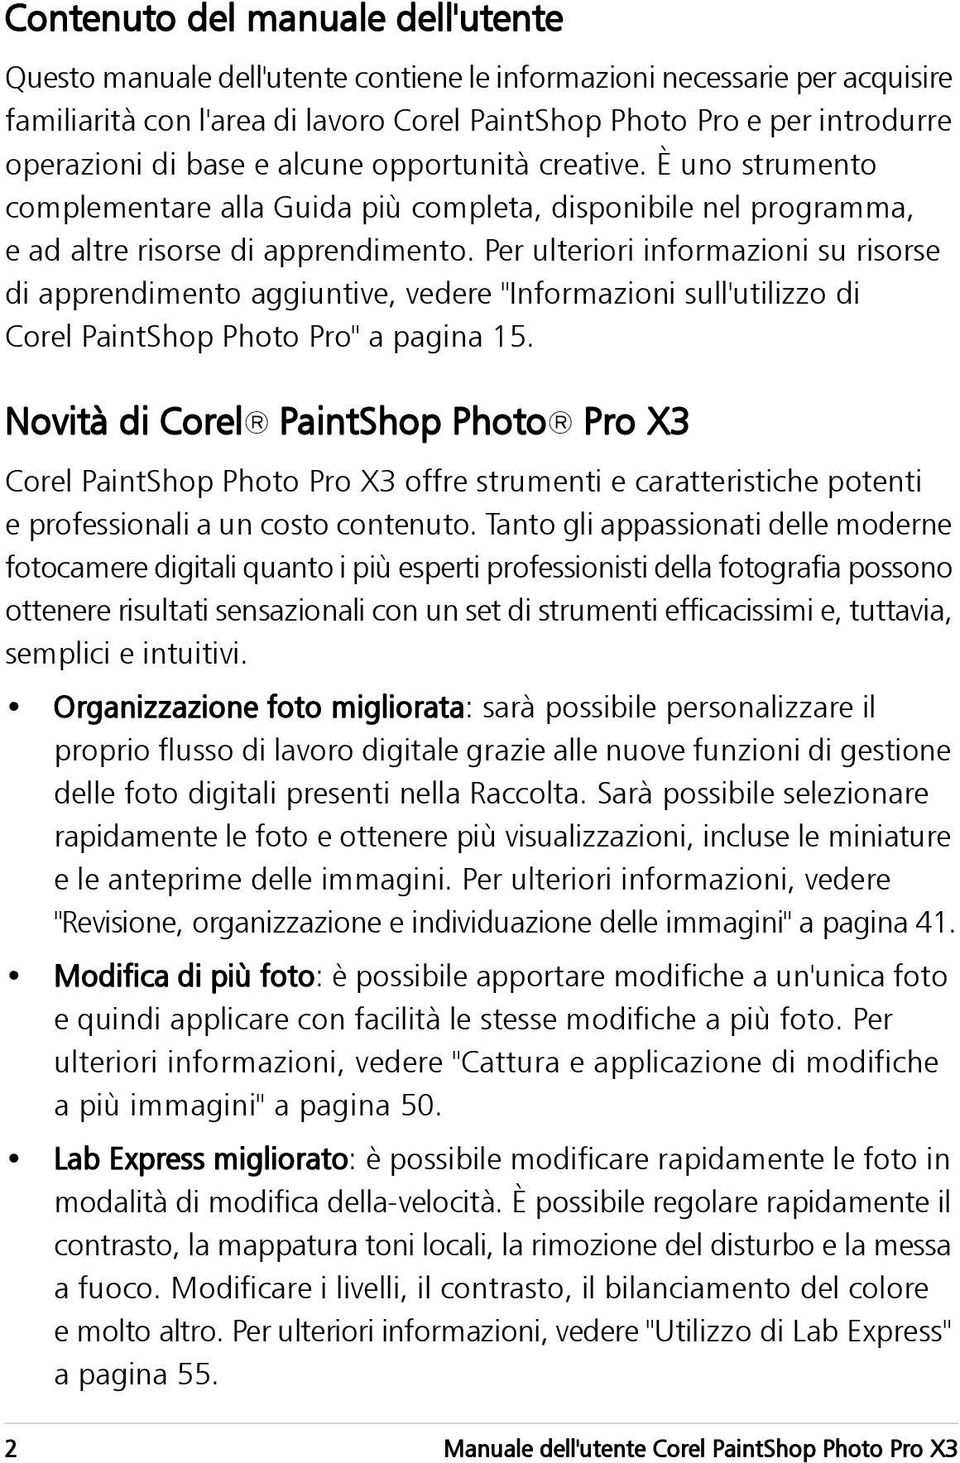 Per ulteriori informazioni su risorse di apprendimento aggiuntive, vedere "Informazioni sull'utilizzo di Corel PaintShop Photo Pro" a pagina 15.